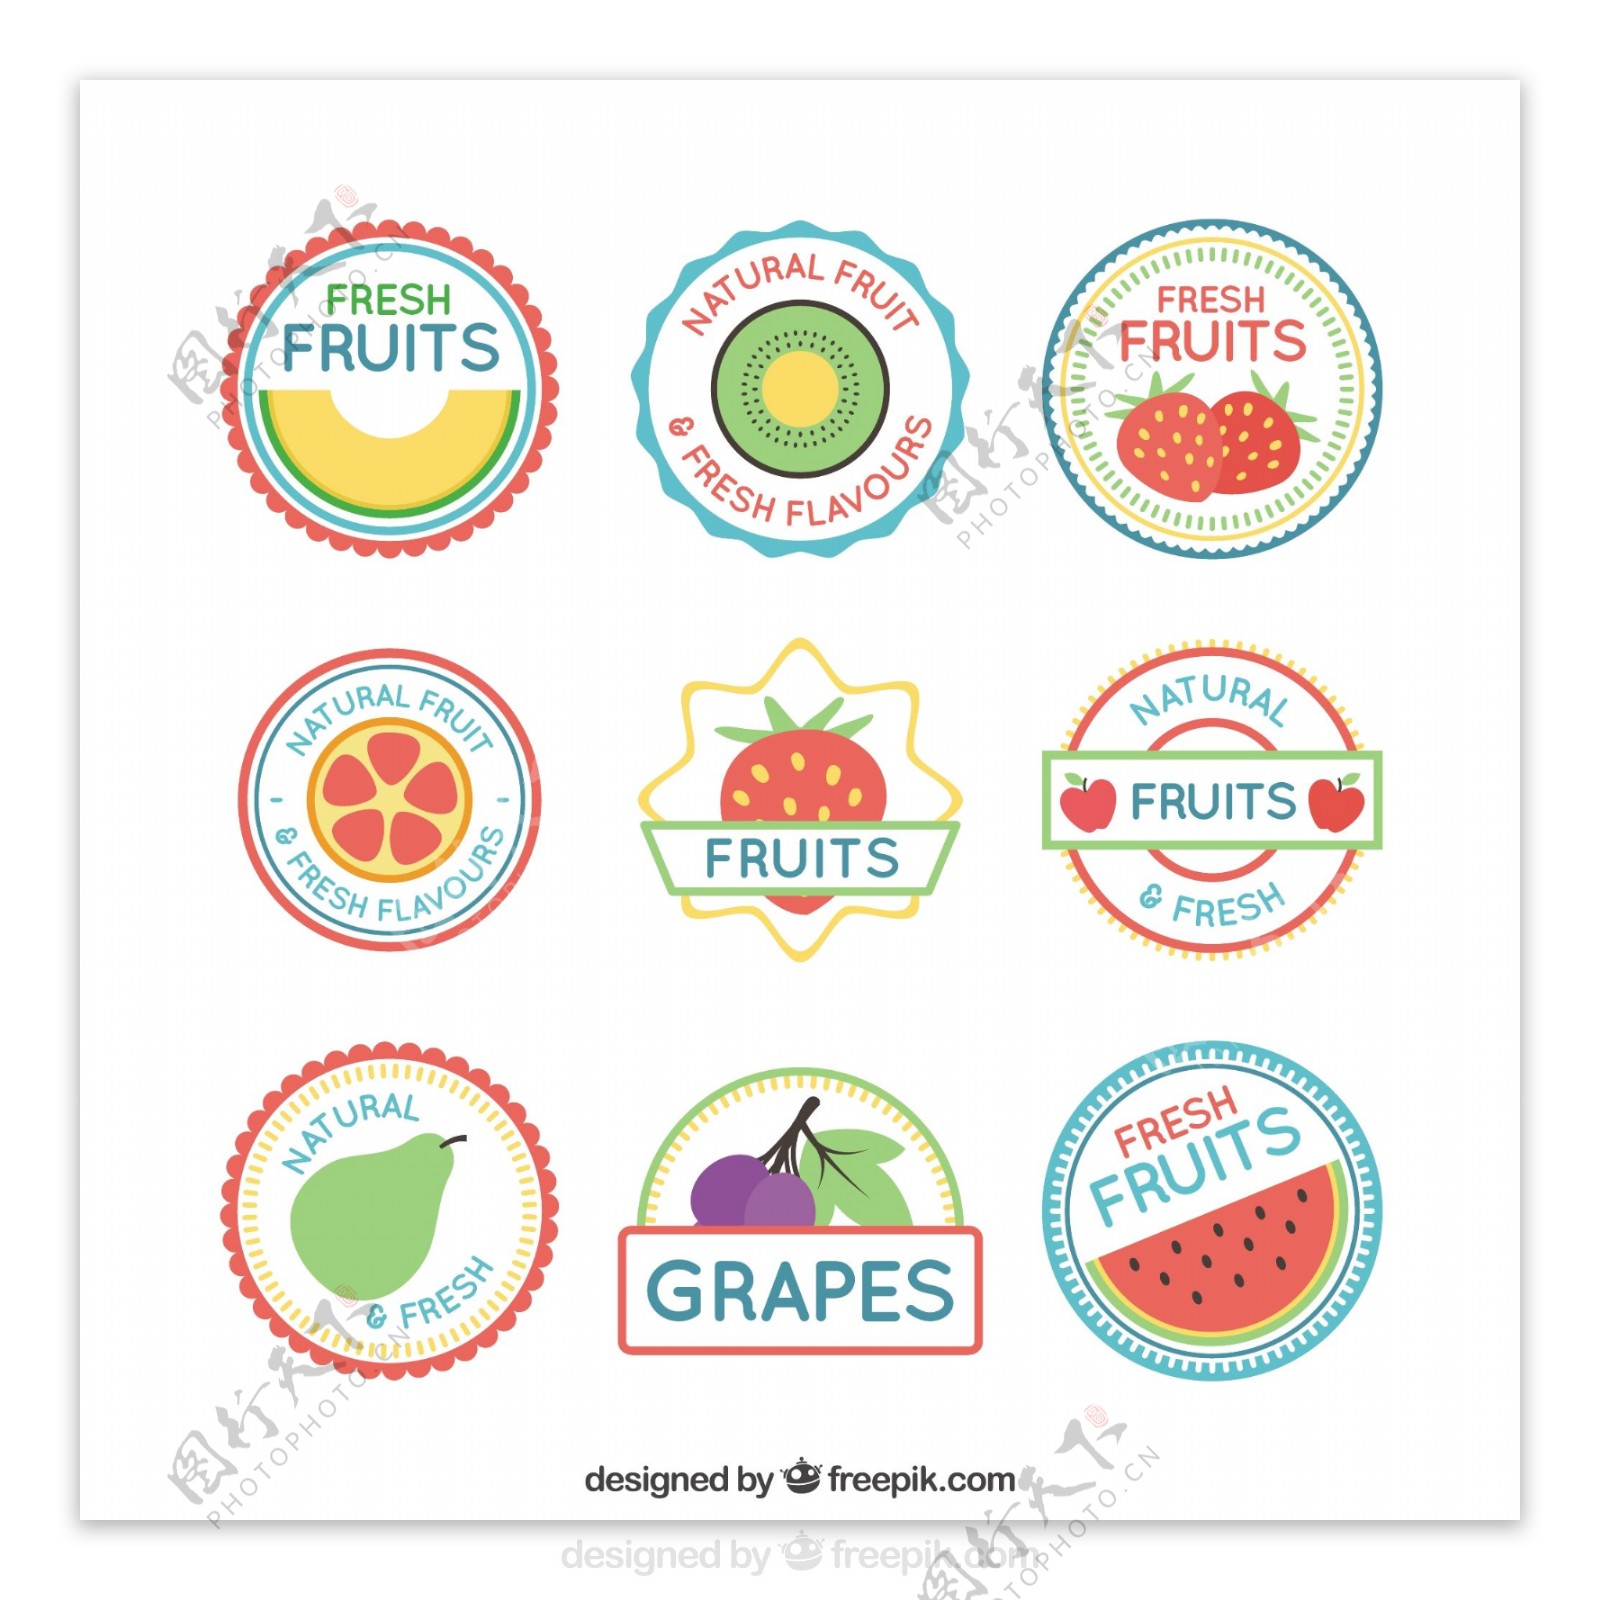 平面设计中的水果标签收集